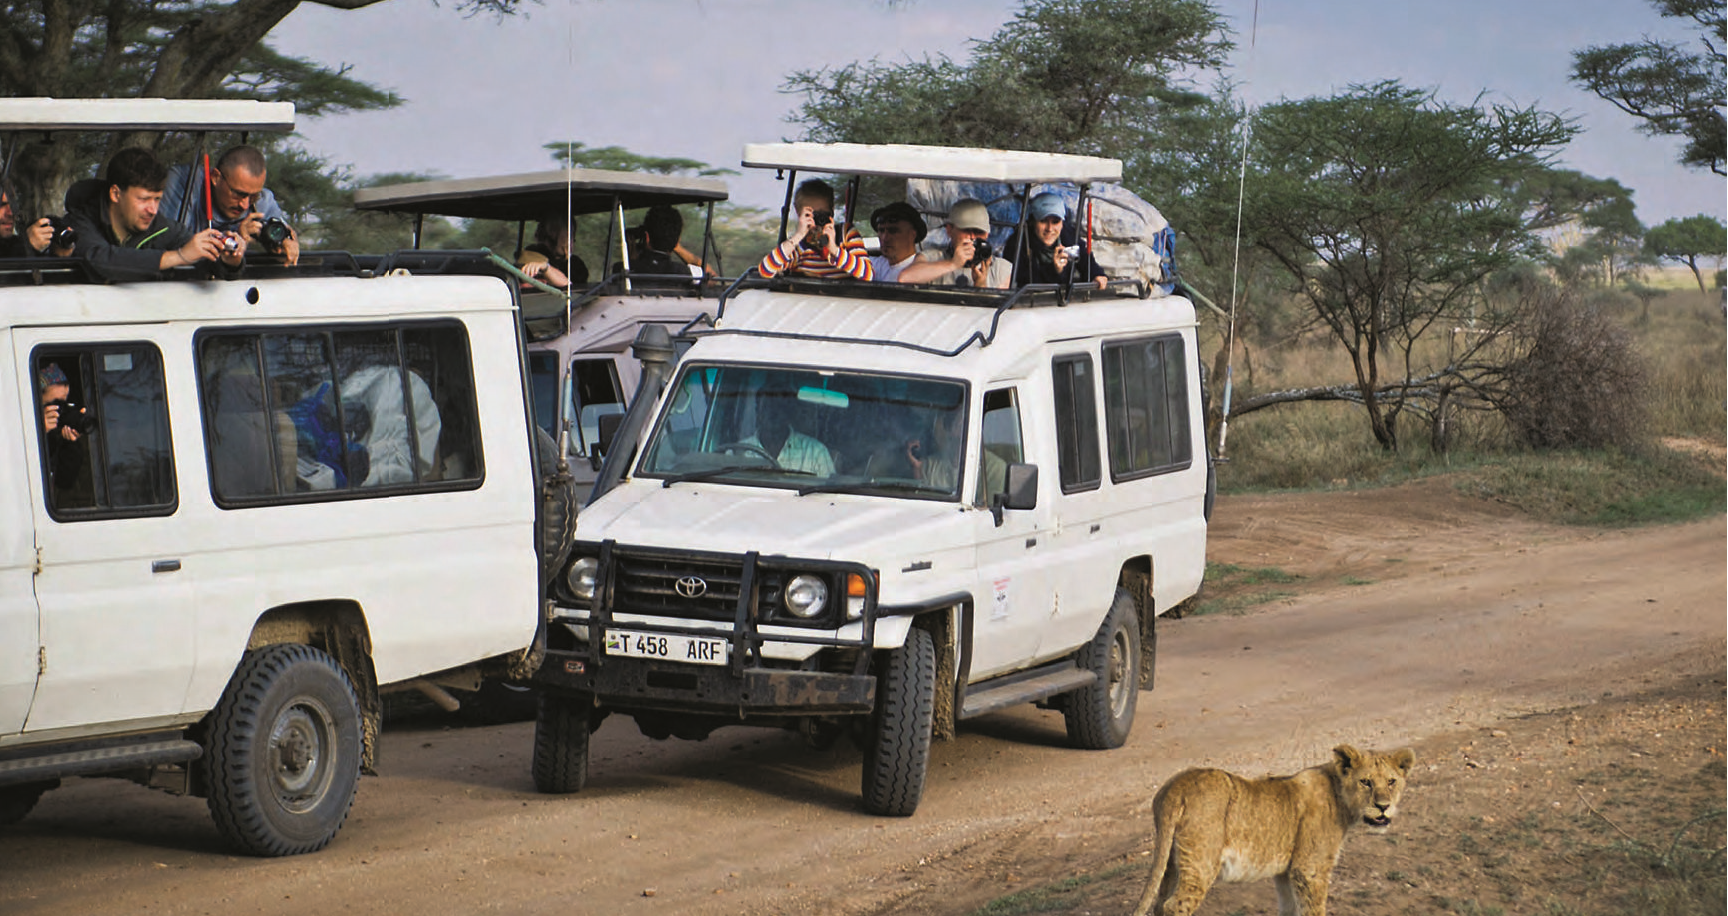 Le parc national du Serengeti accueille de nombreux voyageurs en quête de sensations fortes au cours d’un safari. SVEN TORFINN/N.Y.T./REDUX/RÉA